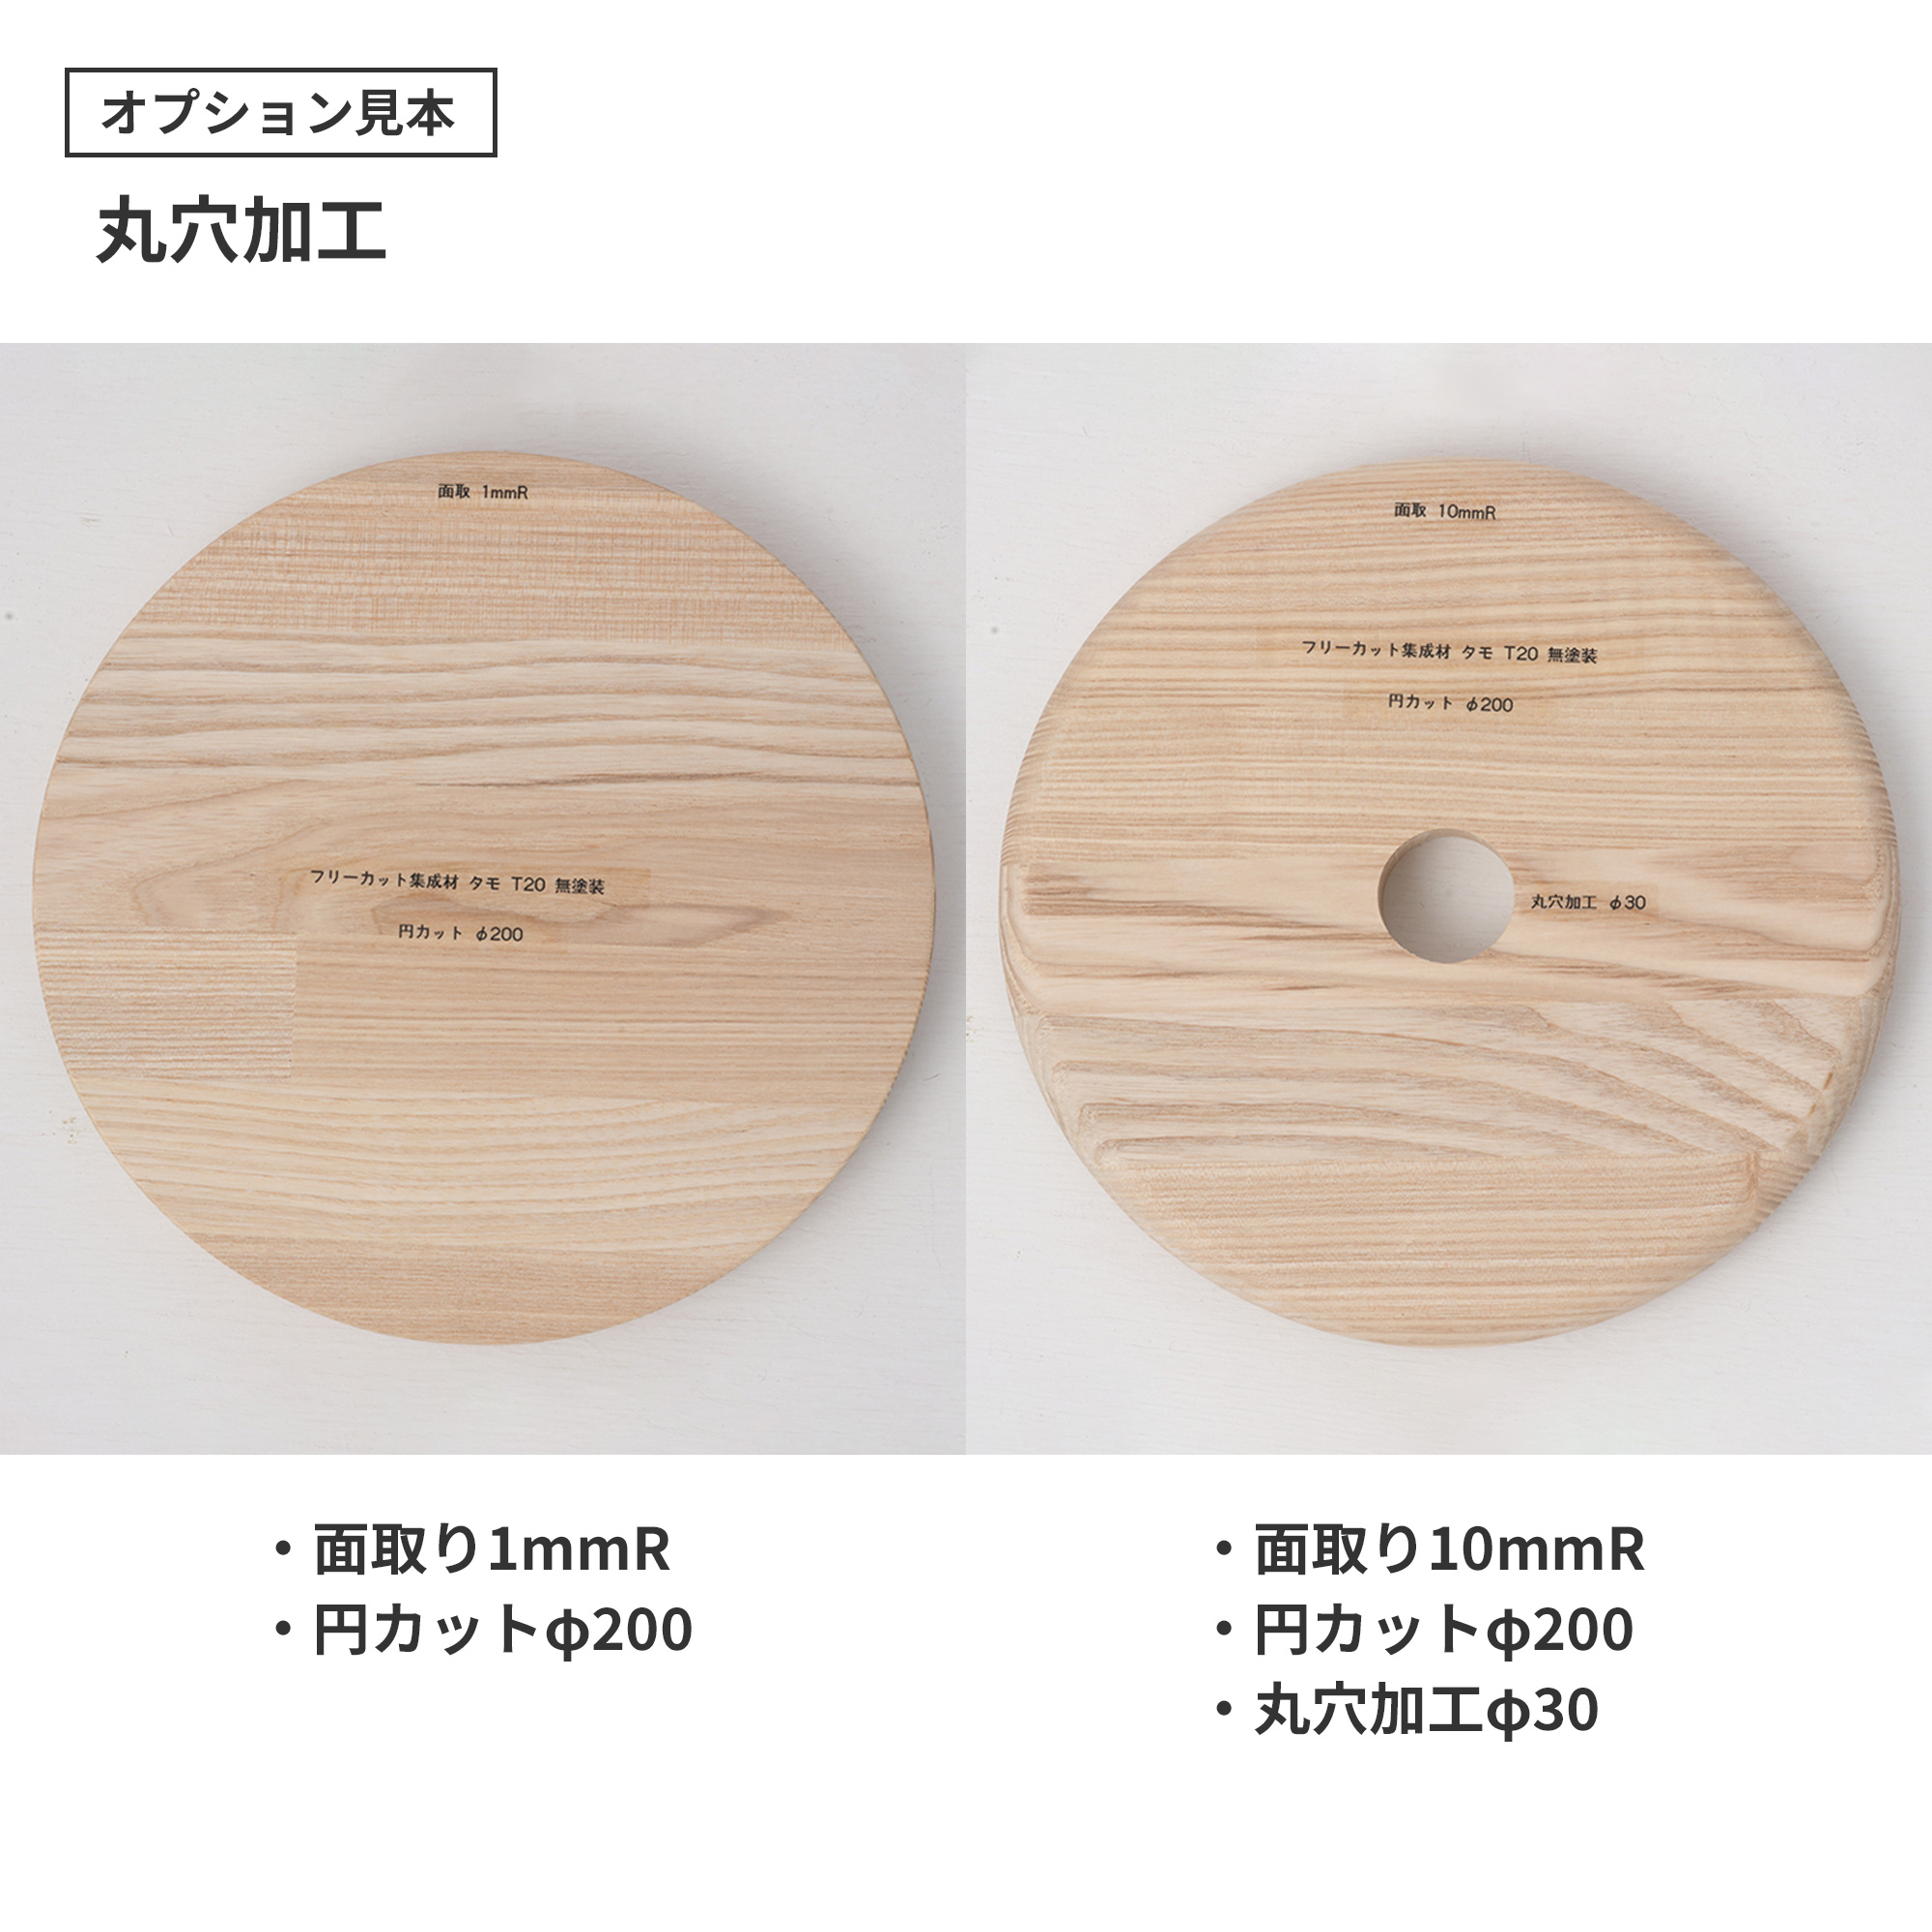 フリーカット集成材 タモ | PS-TT003-03-G049 | テーブル天板